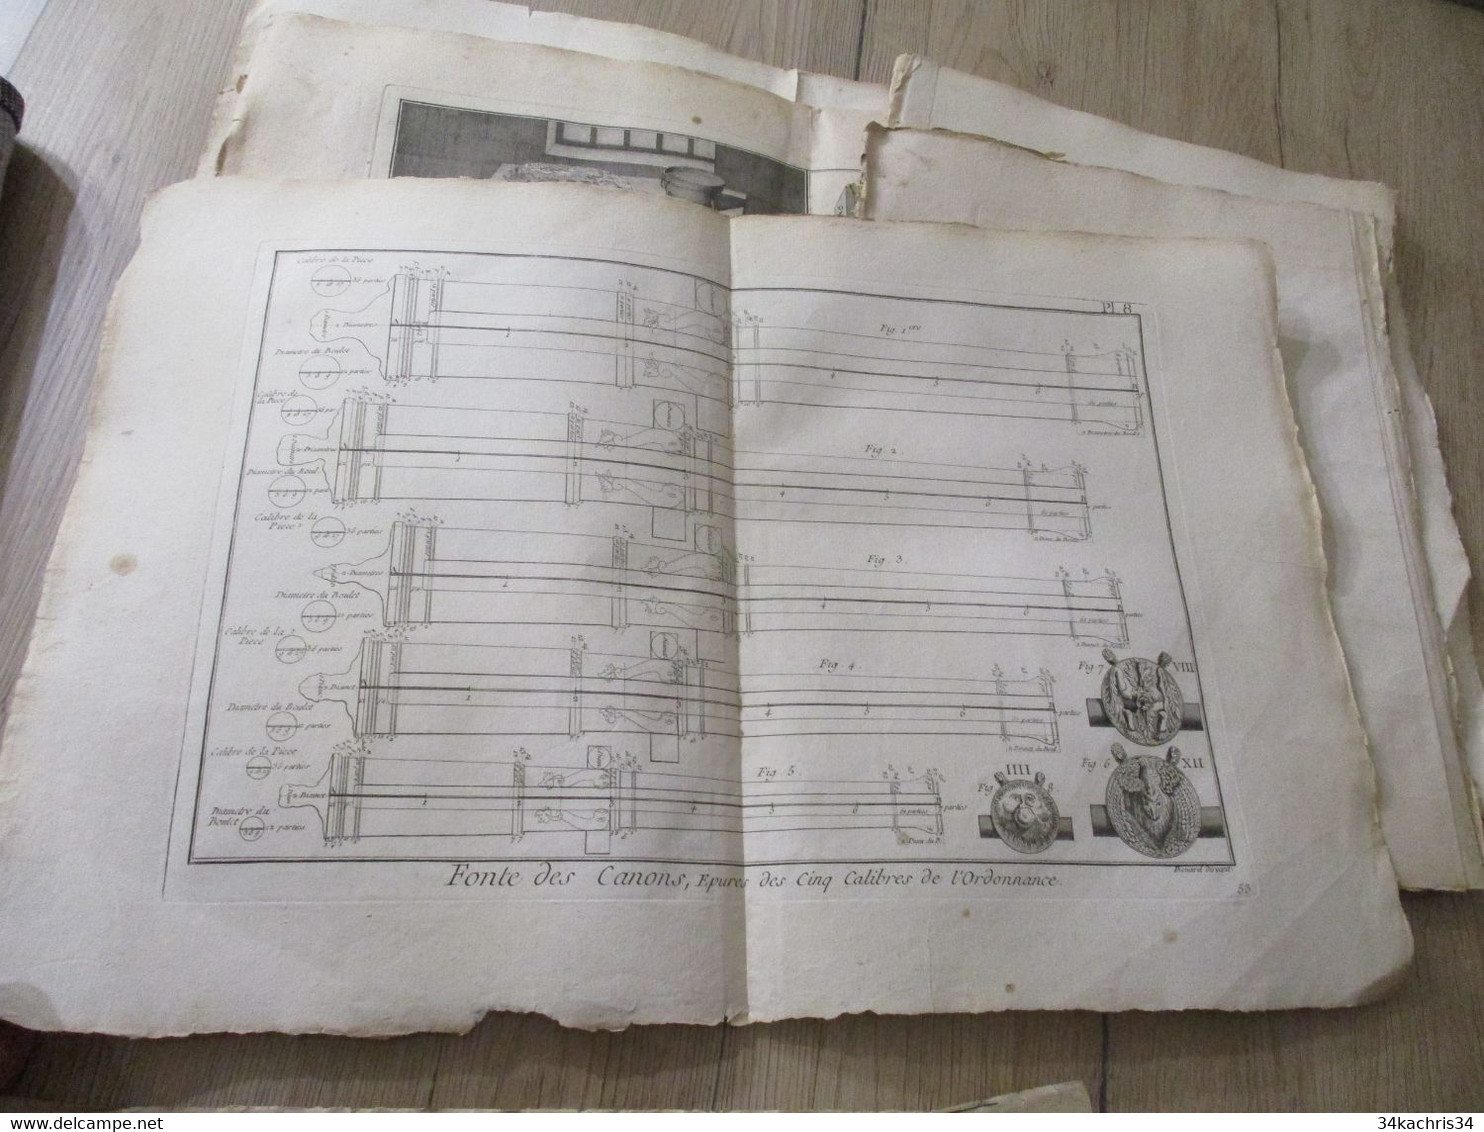 Encyclopédie Méthodique Panckoucke 24 gravures originales Fin XVIII ème fabrication des canons  dont 6 doubles